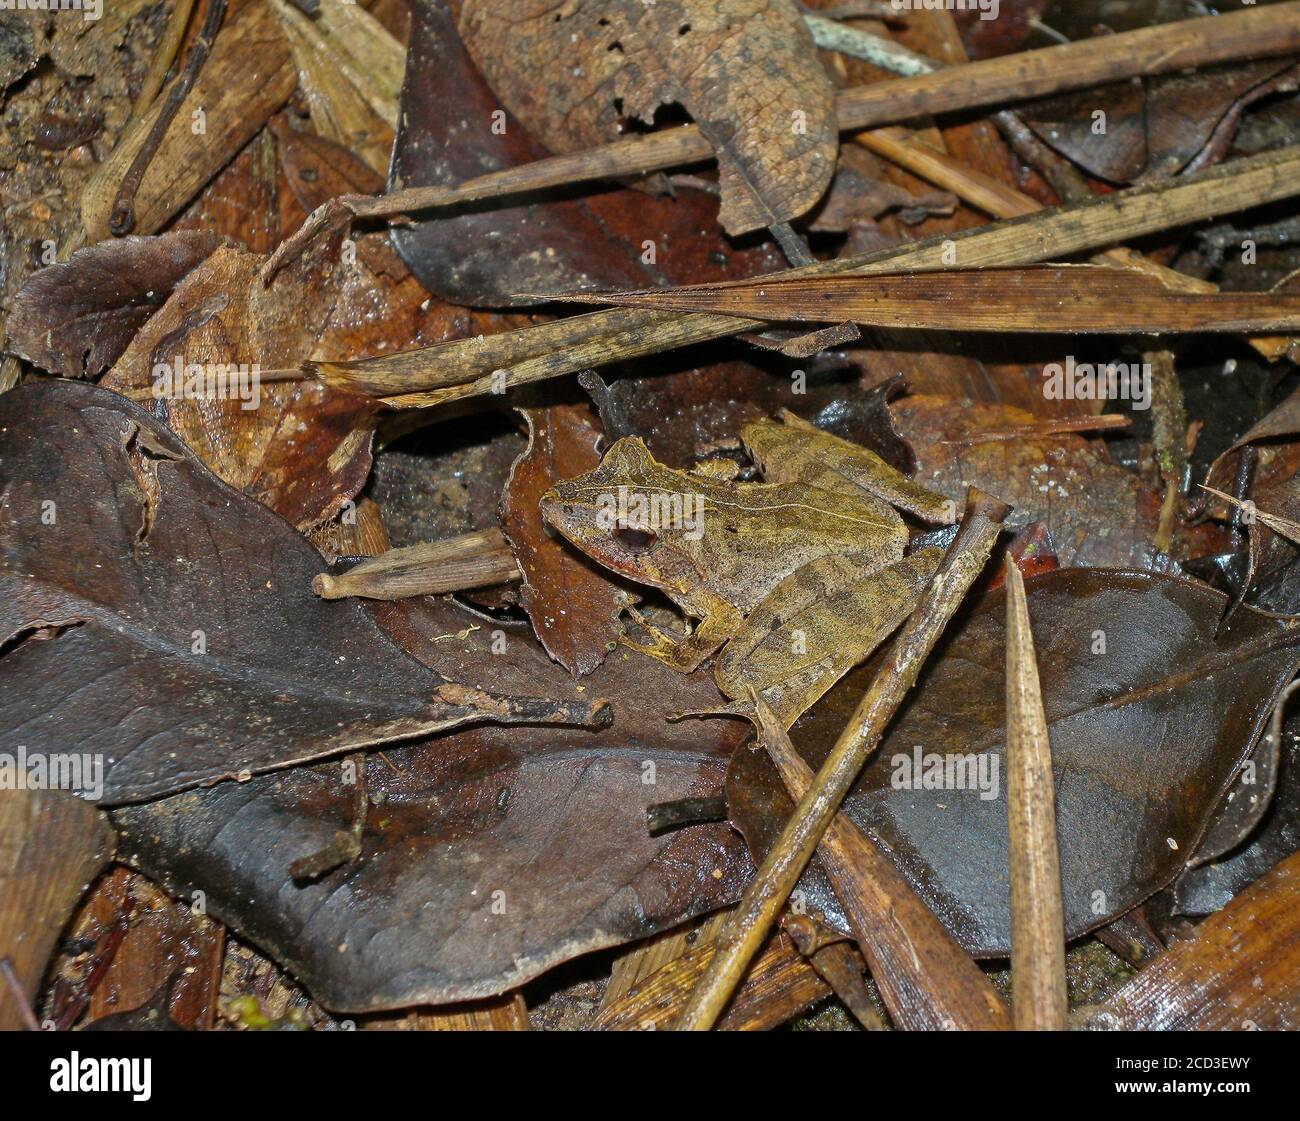 La rana de Madagascar esculpida (Gephyromantis sculpturatus), sentada en la hojalata en el suelo del bosque, está amenazada por la pérdida de hábitat, Madagascar, Foto de stock